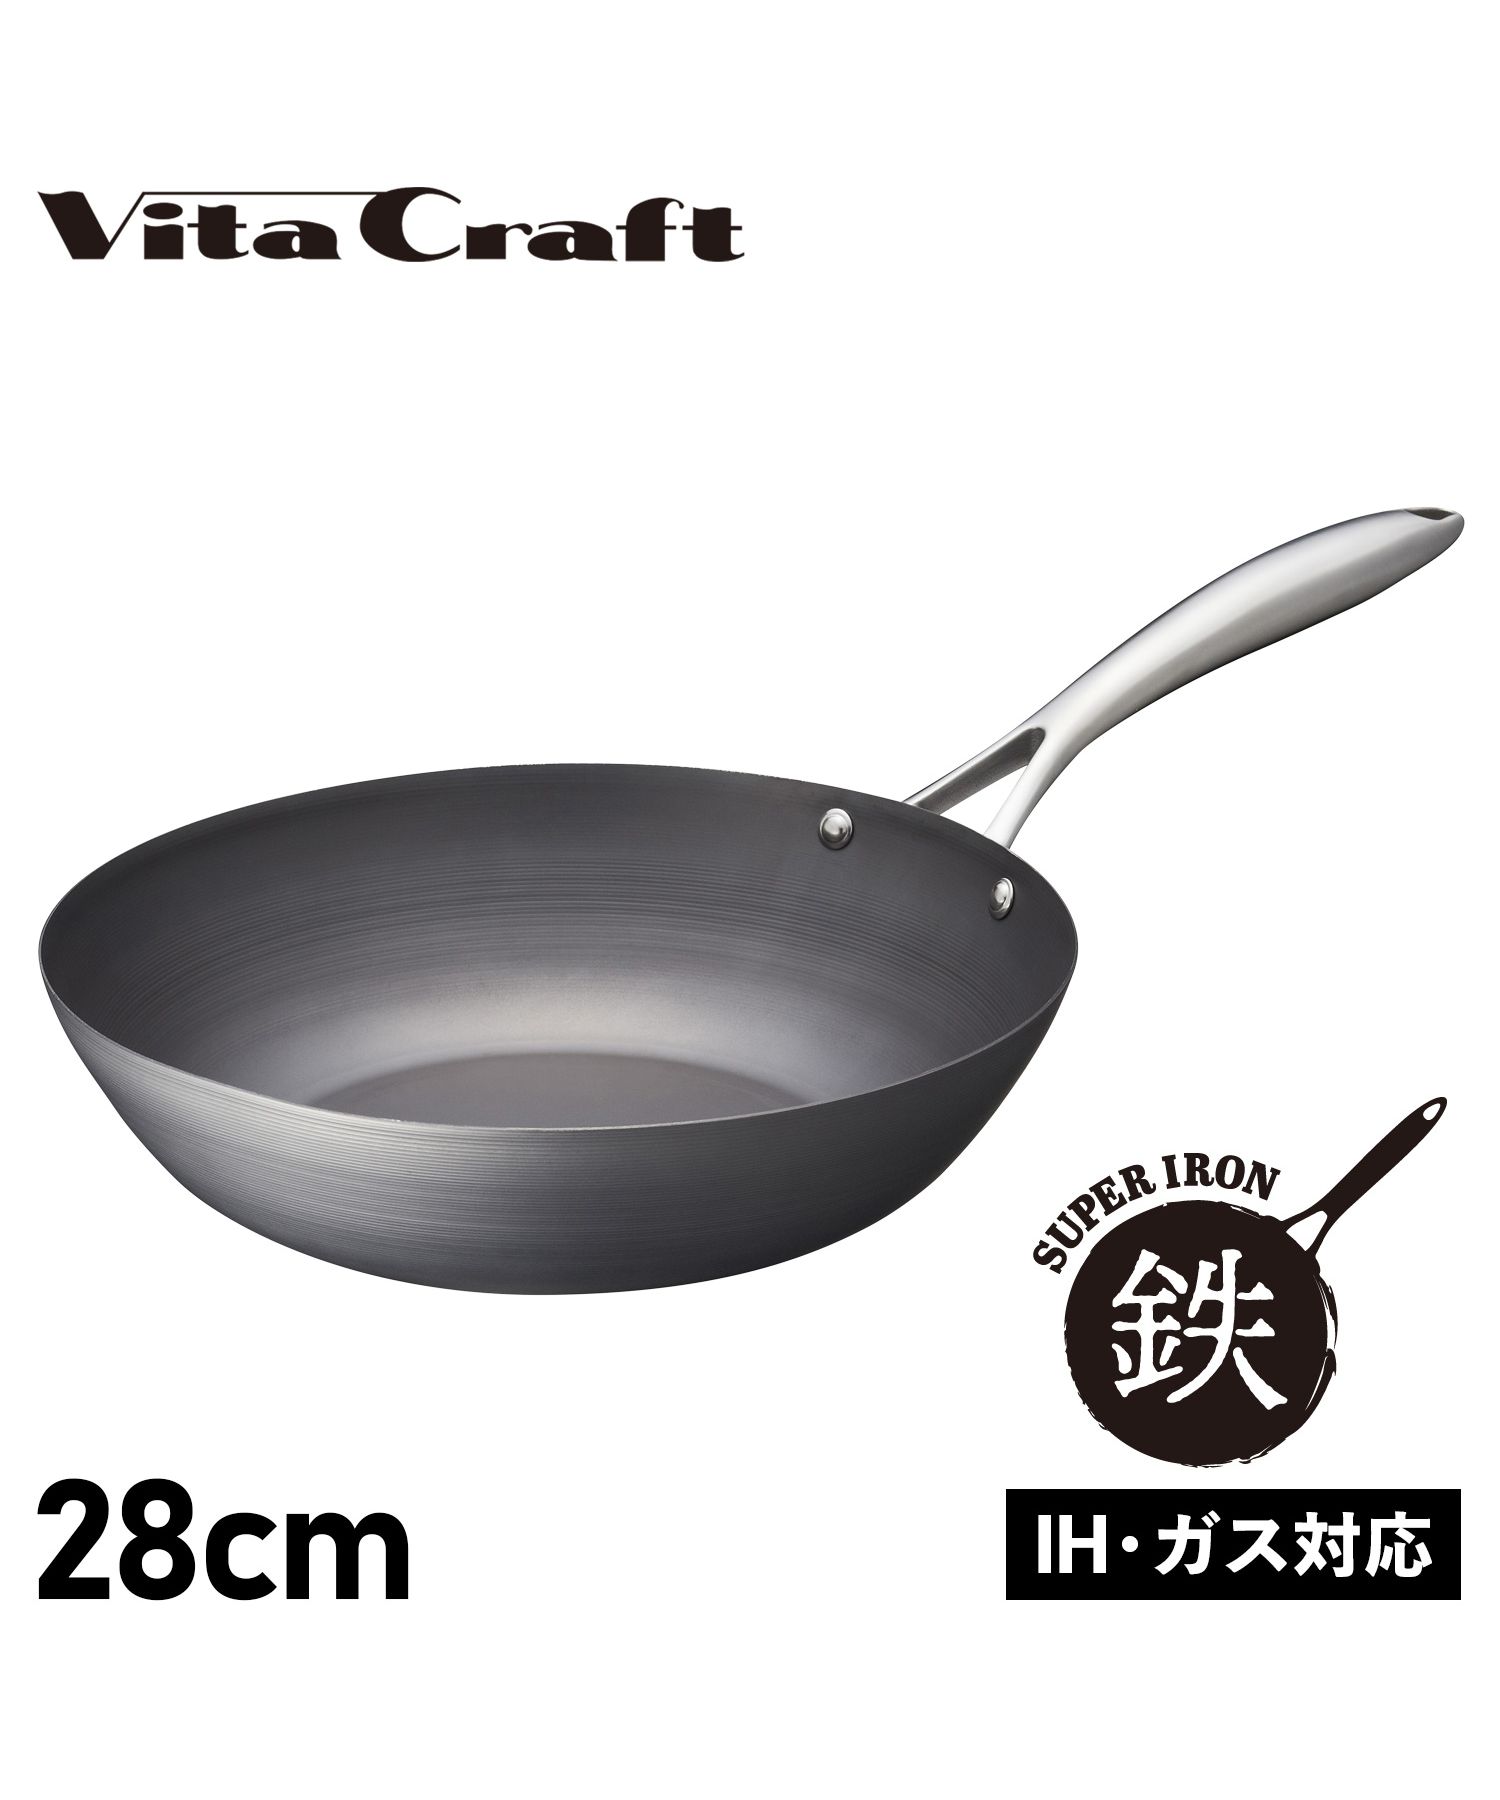 ビタクラフト Vita Craft スーパー鉄 フライパン ウォックパン 28cm 深型 IH ガス対応 WOK PAN 2006